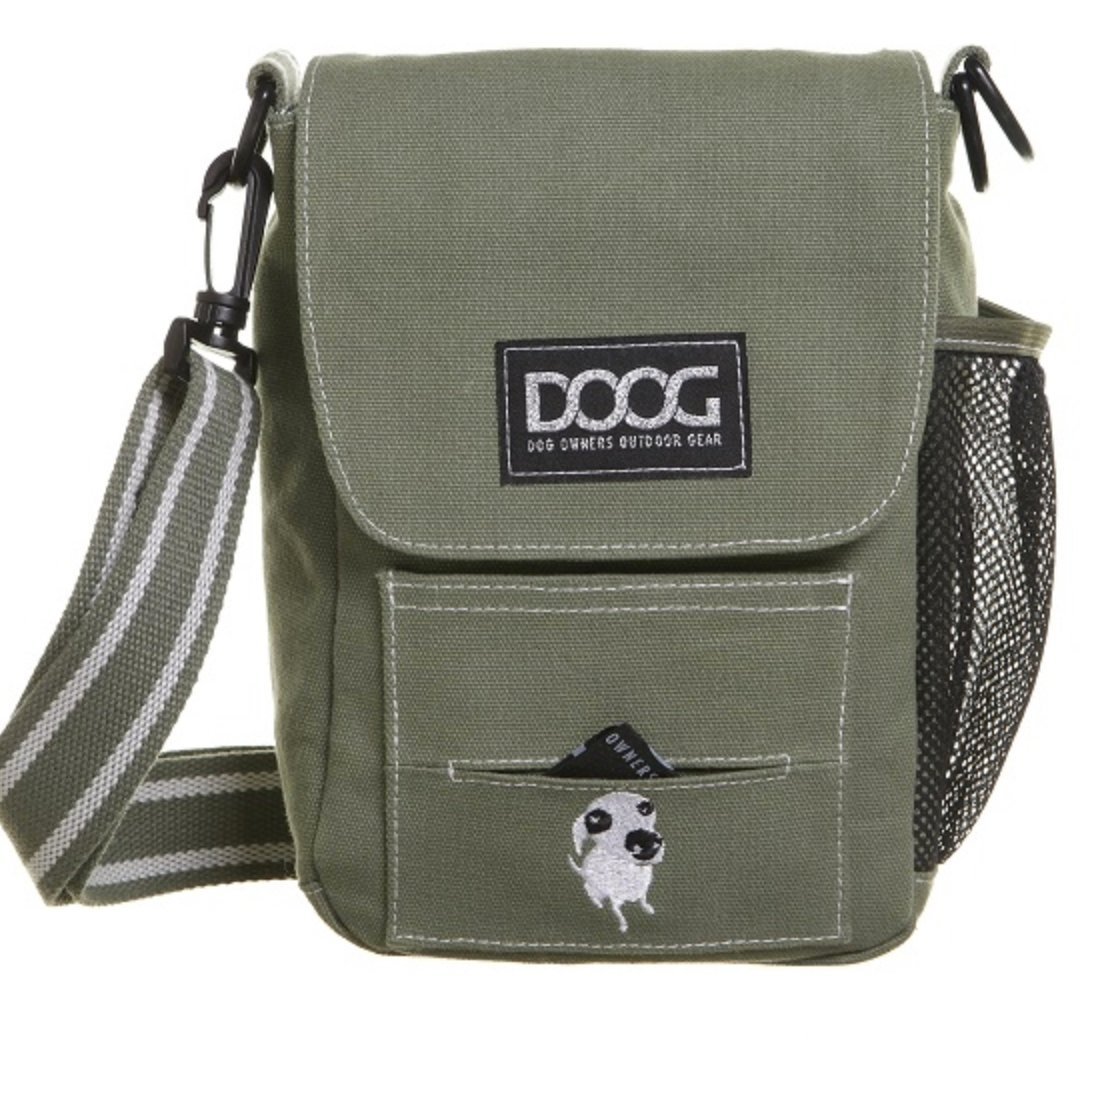 Doog - Shoulder Bag - Green